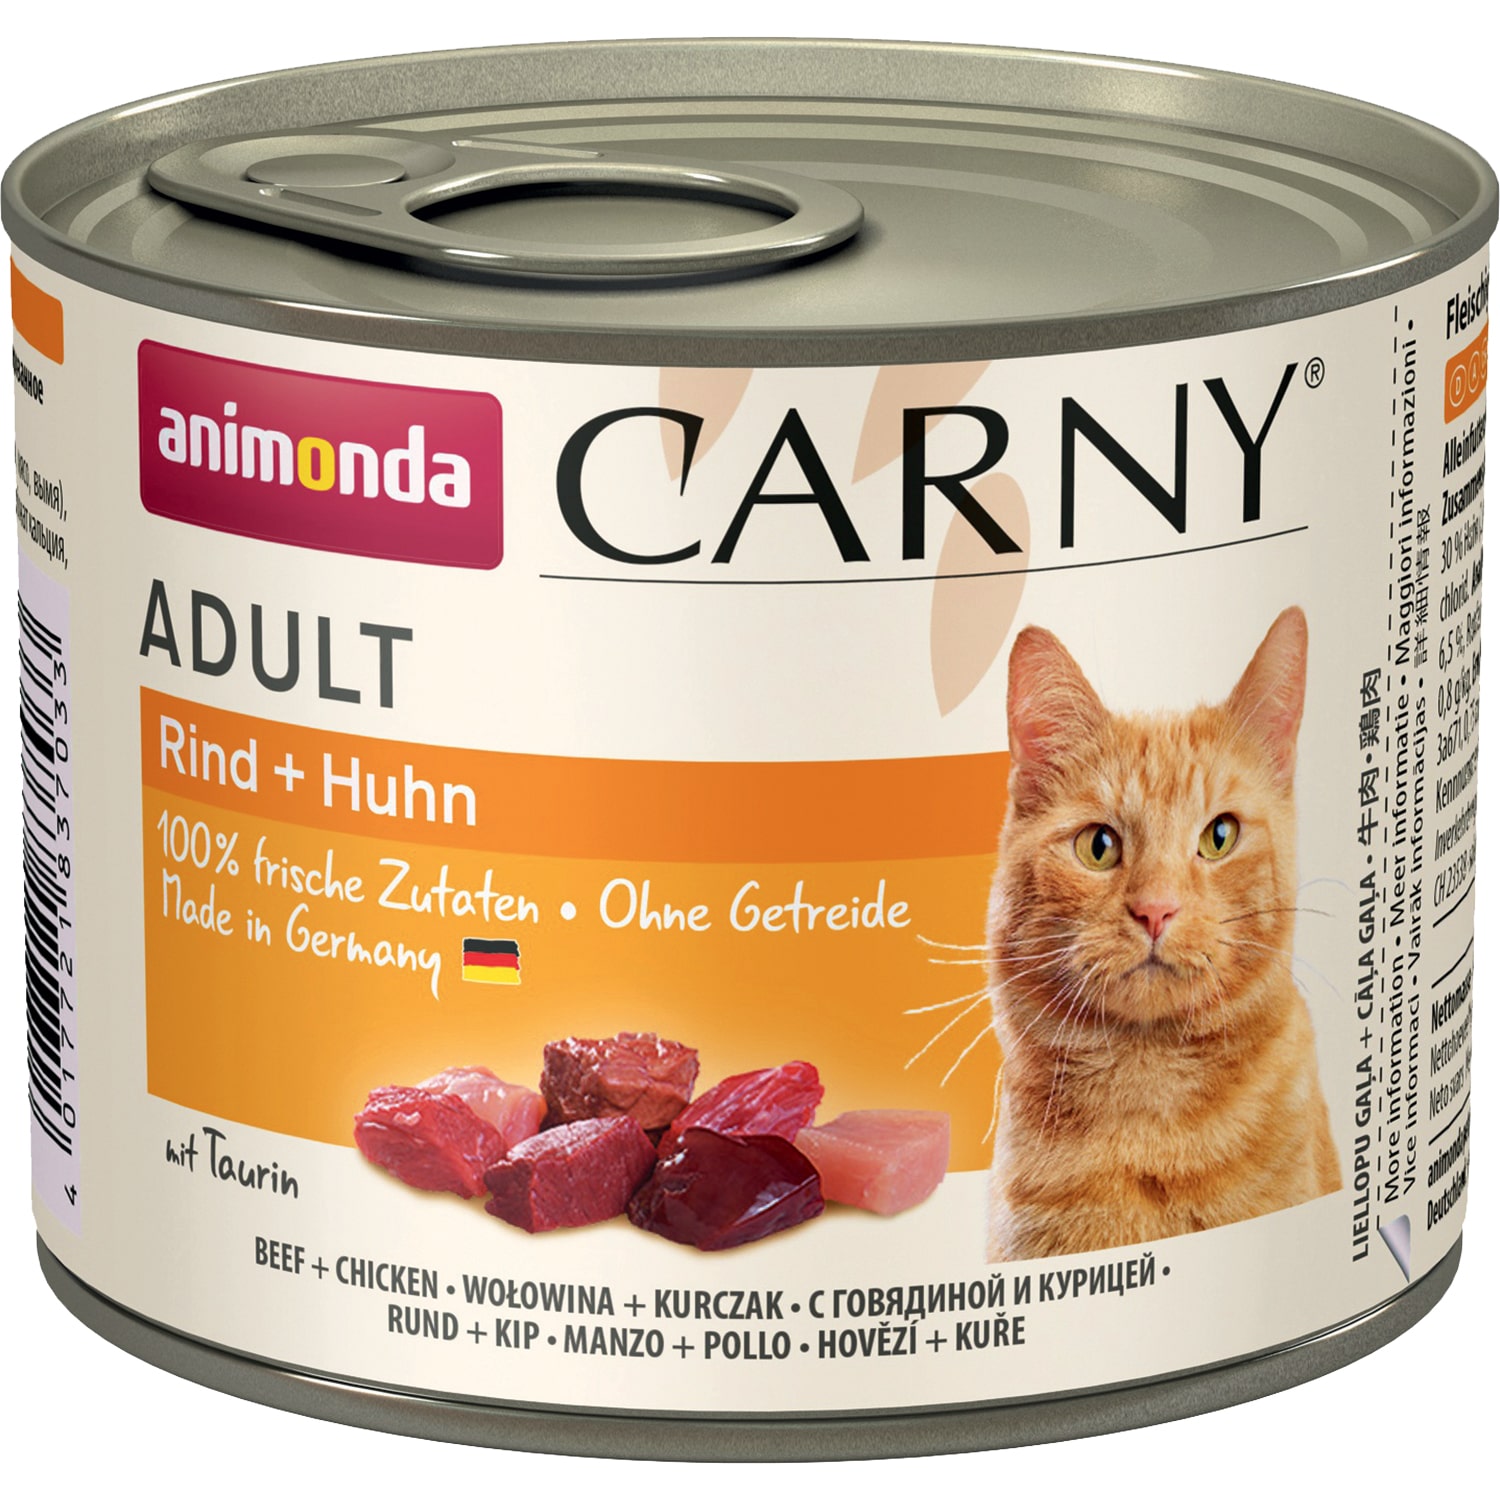 Carny Adult консервы для кошек старше 1 года, с говядиной и курицей, Animonda